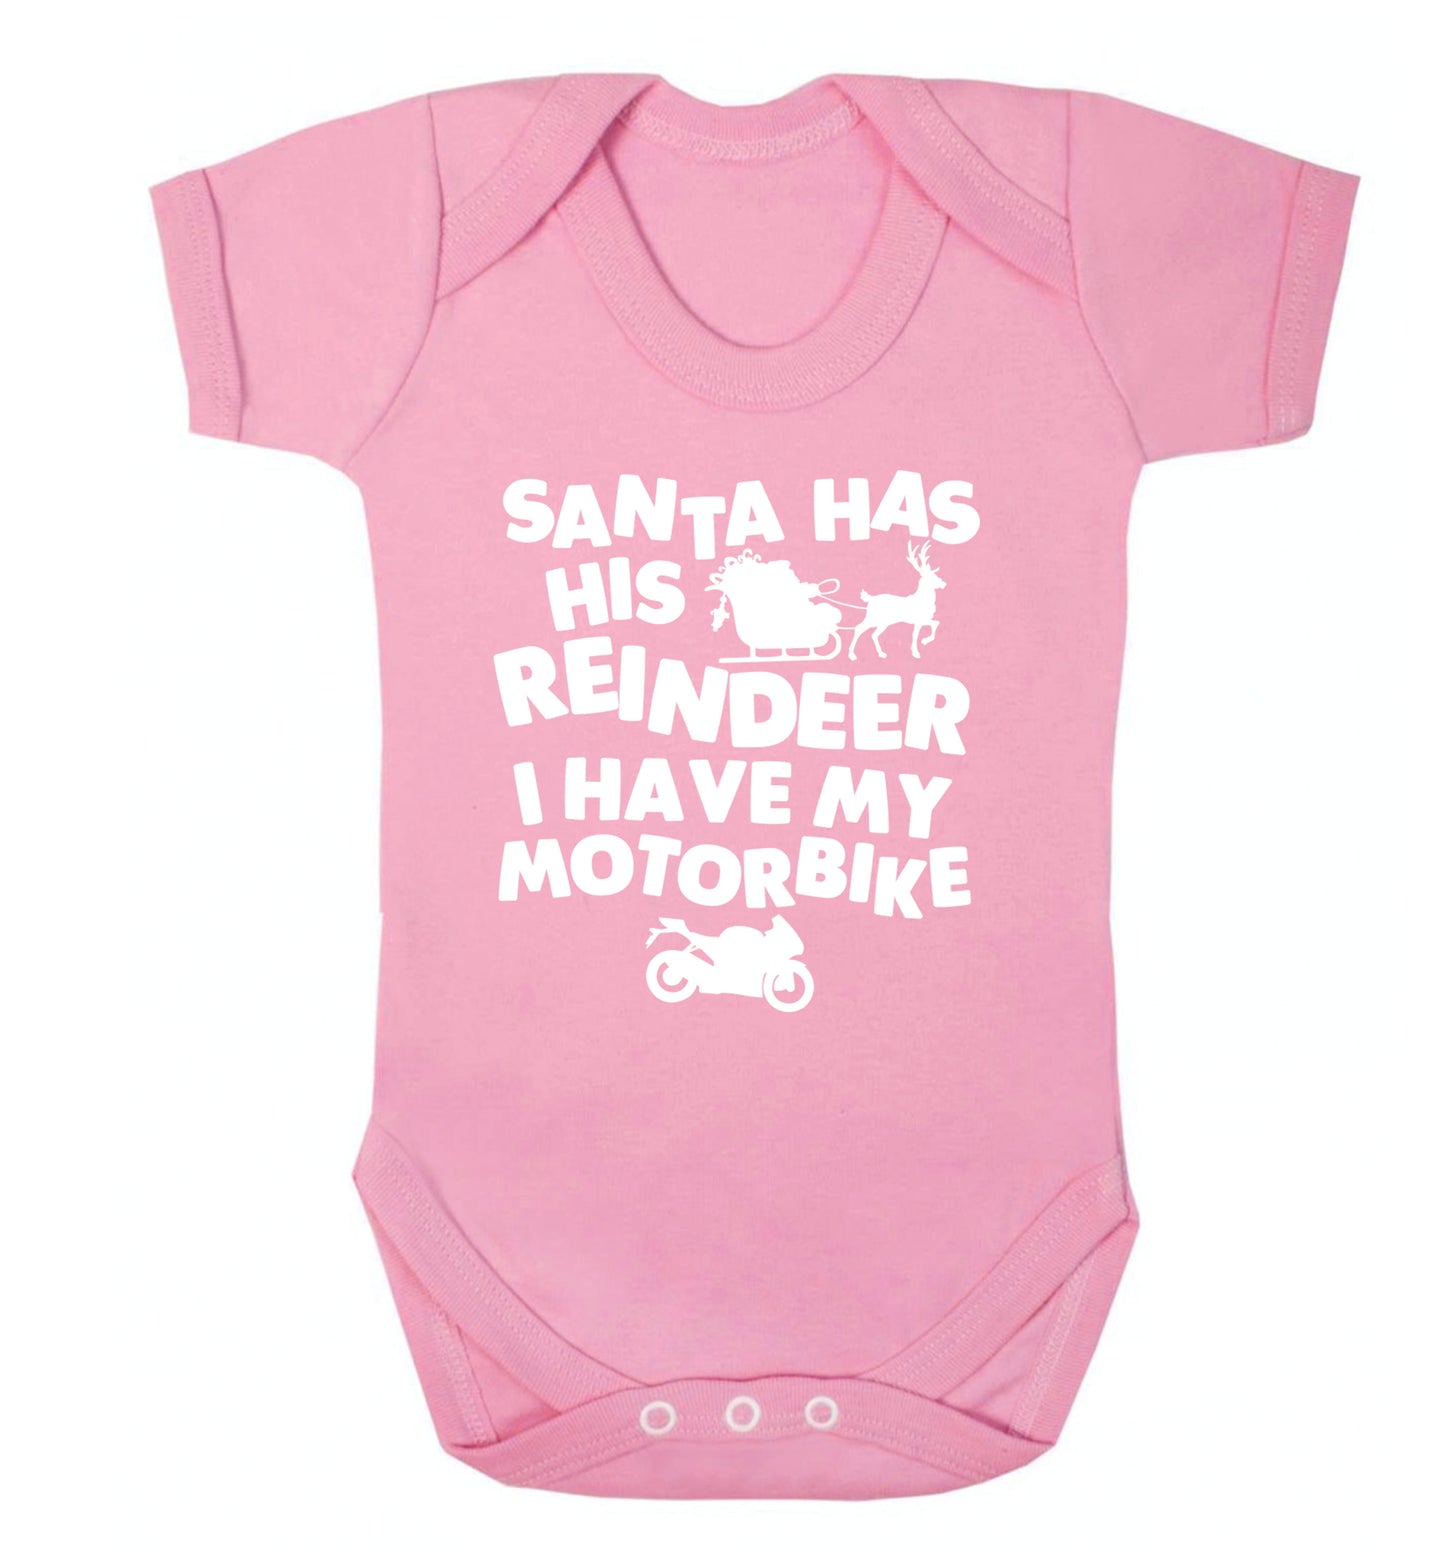 Santa has his reindeer I have my motorbike Baby Vest pale pink 18-24 months